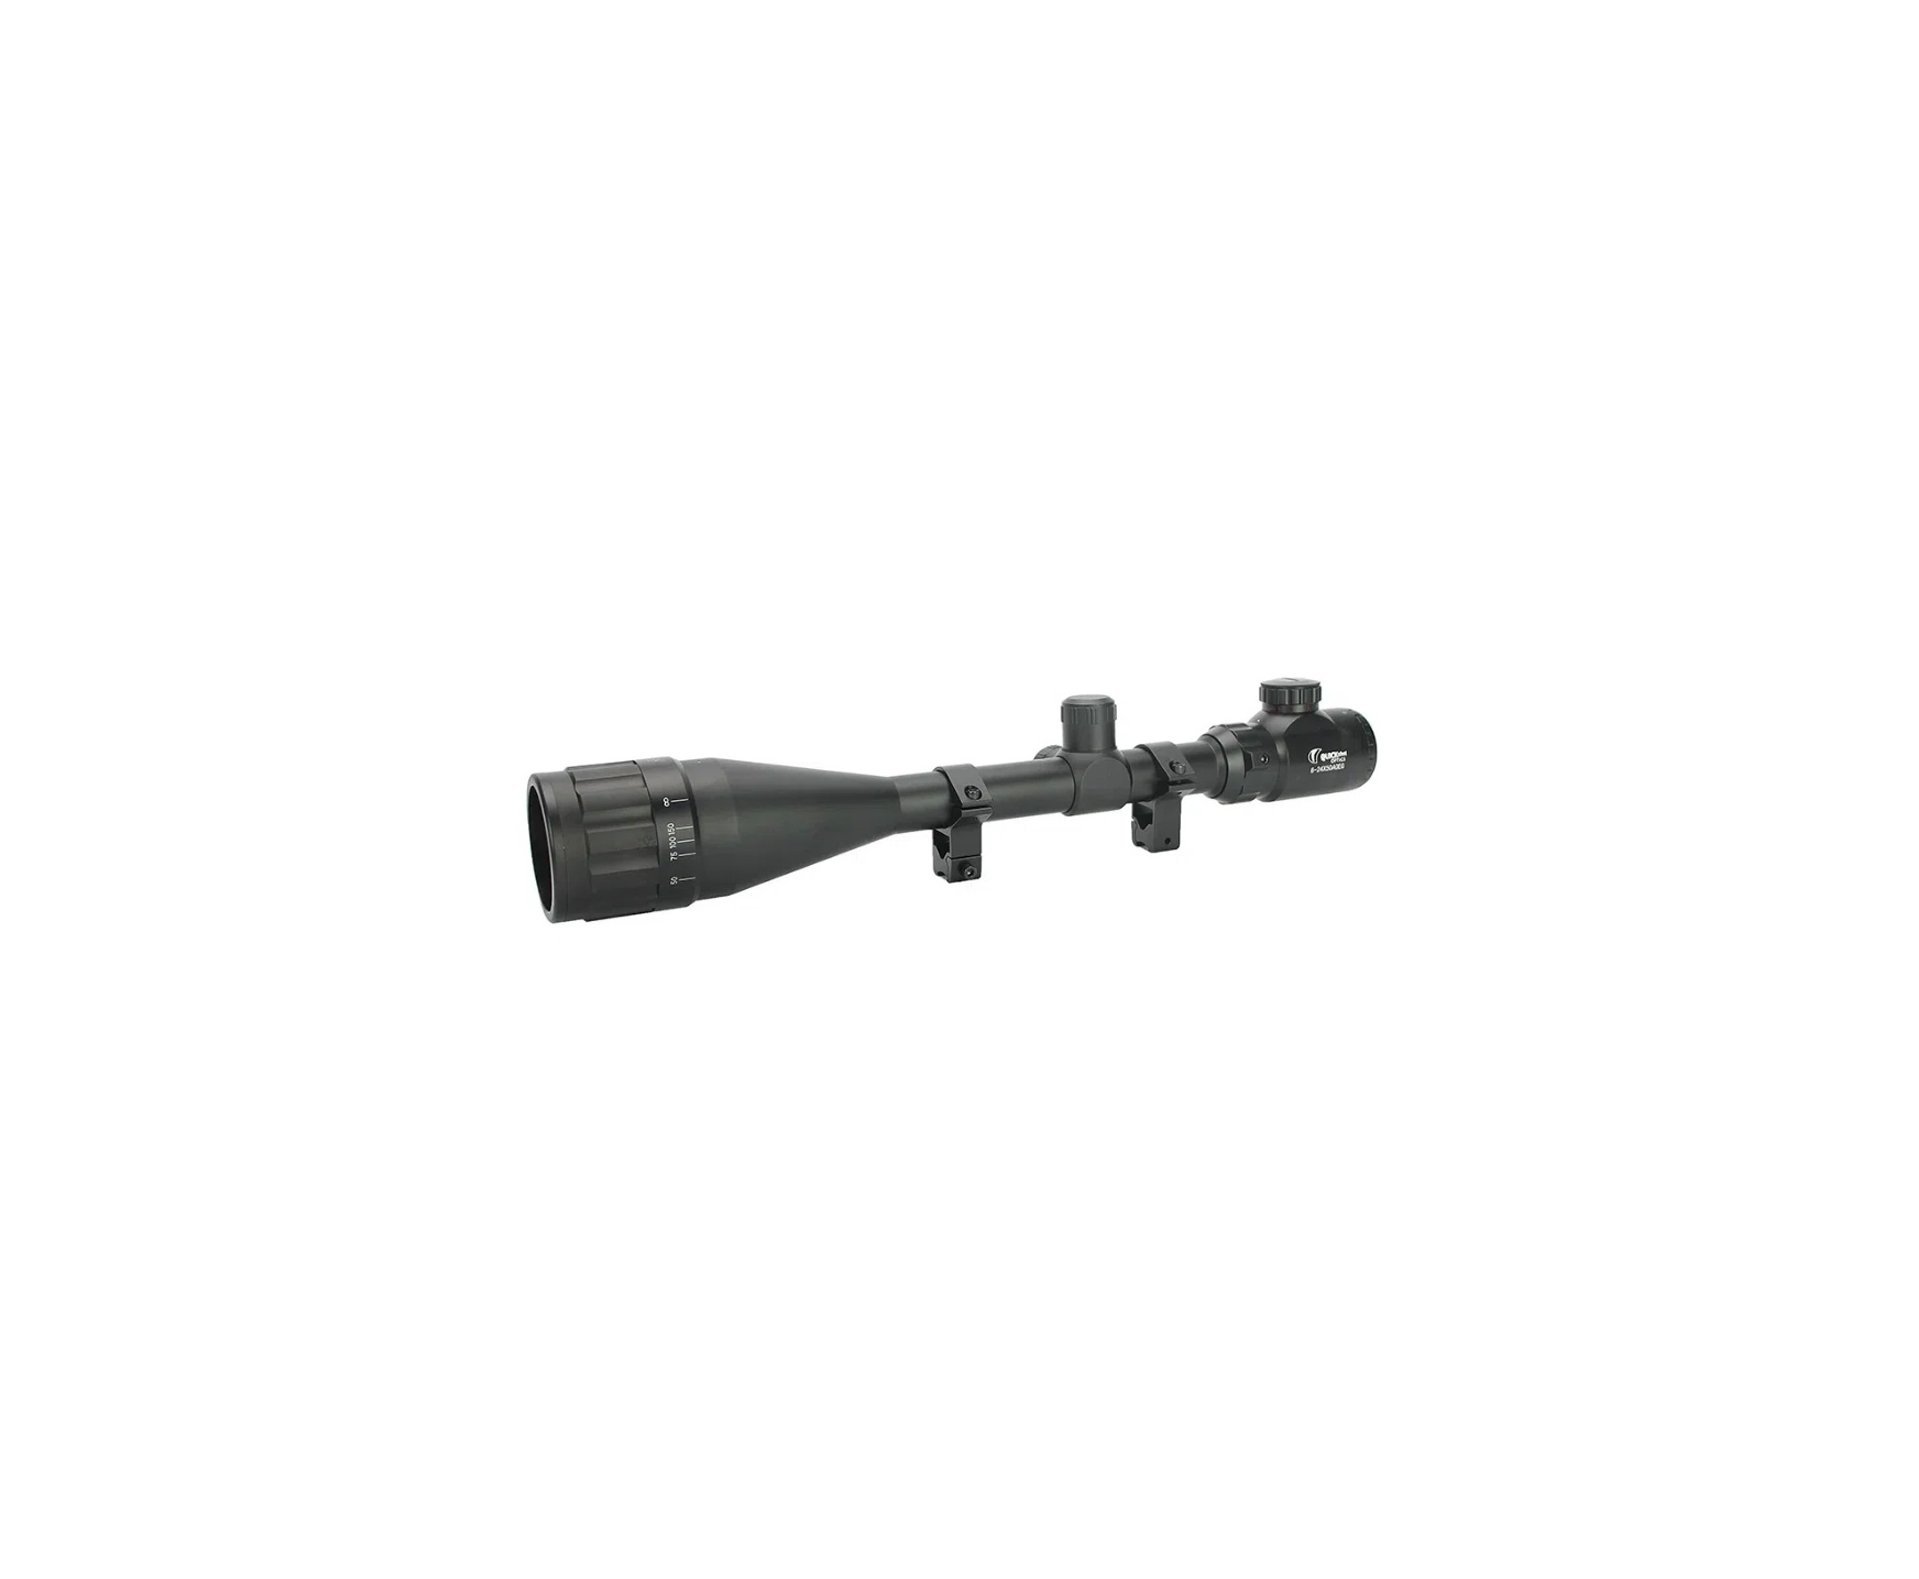 Carabina de Pressão PCP Mauser K98 4.5mm 12 tiros - Diana + Luneta 6-24x50 + Bomba